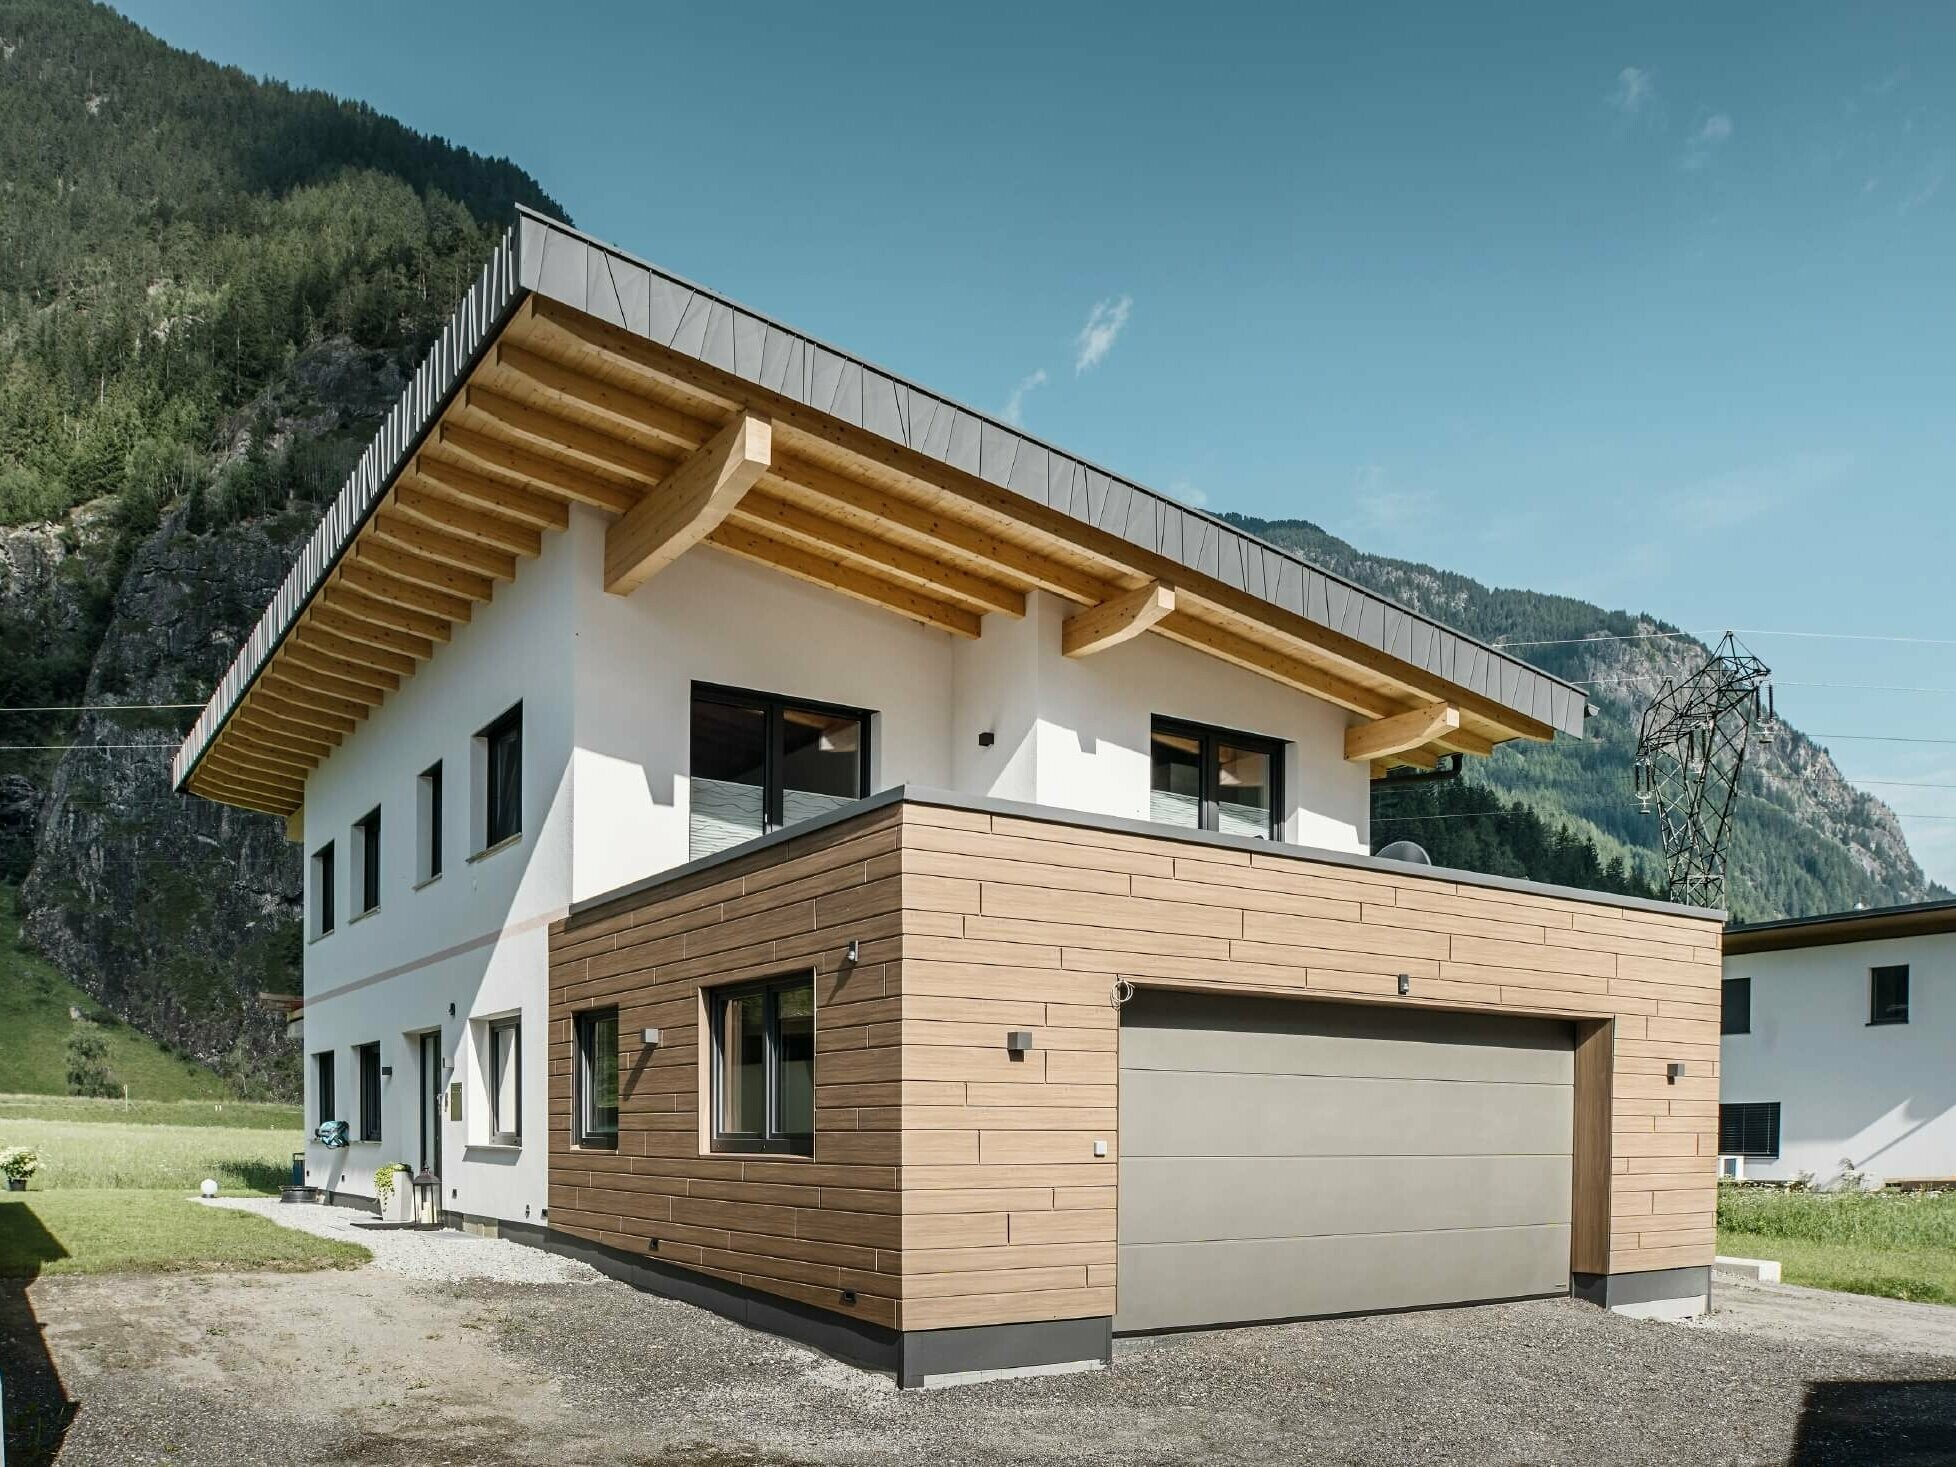 Garage eines Wohnhauses mit PREFA Sidings in Holzoptik im Farbton "Walnuss Braun". Im Hintergrund sind Berge zu sehen. 